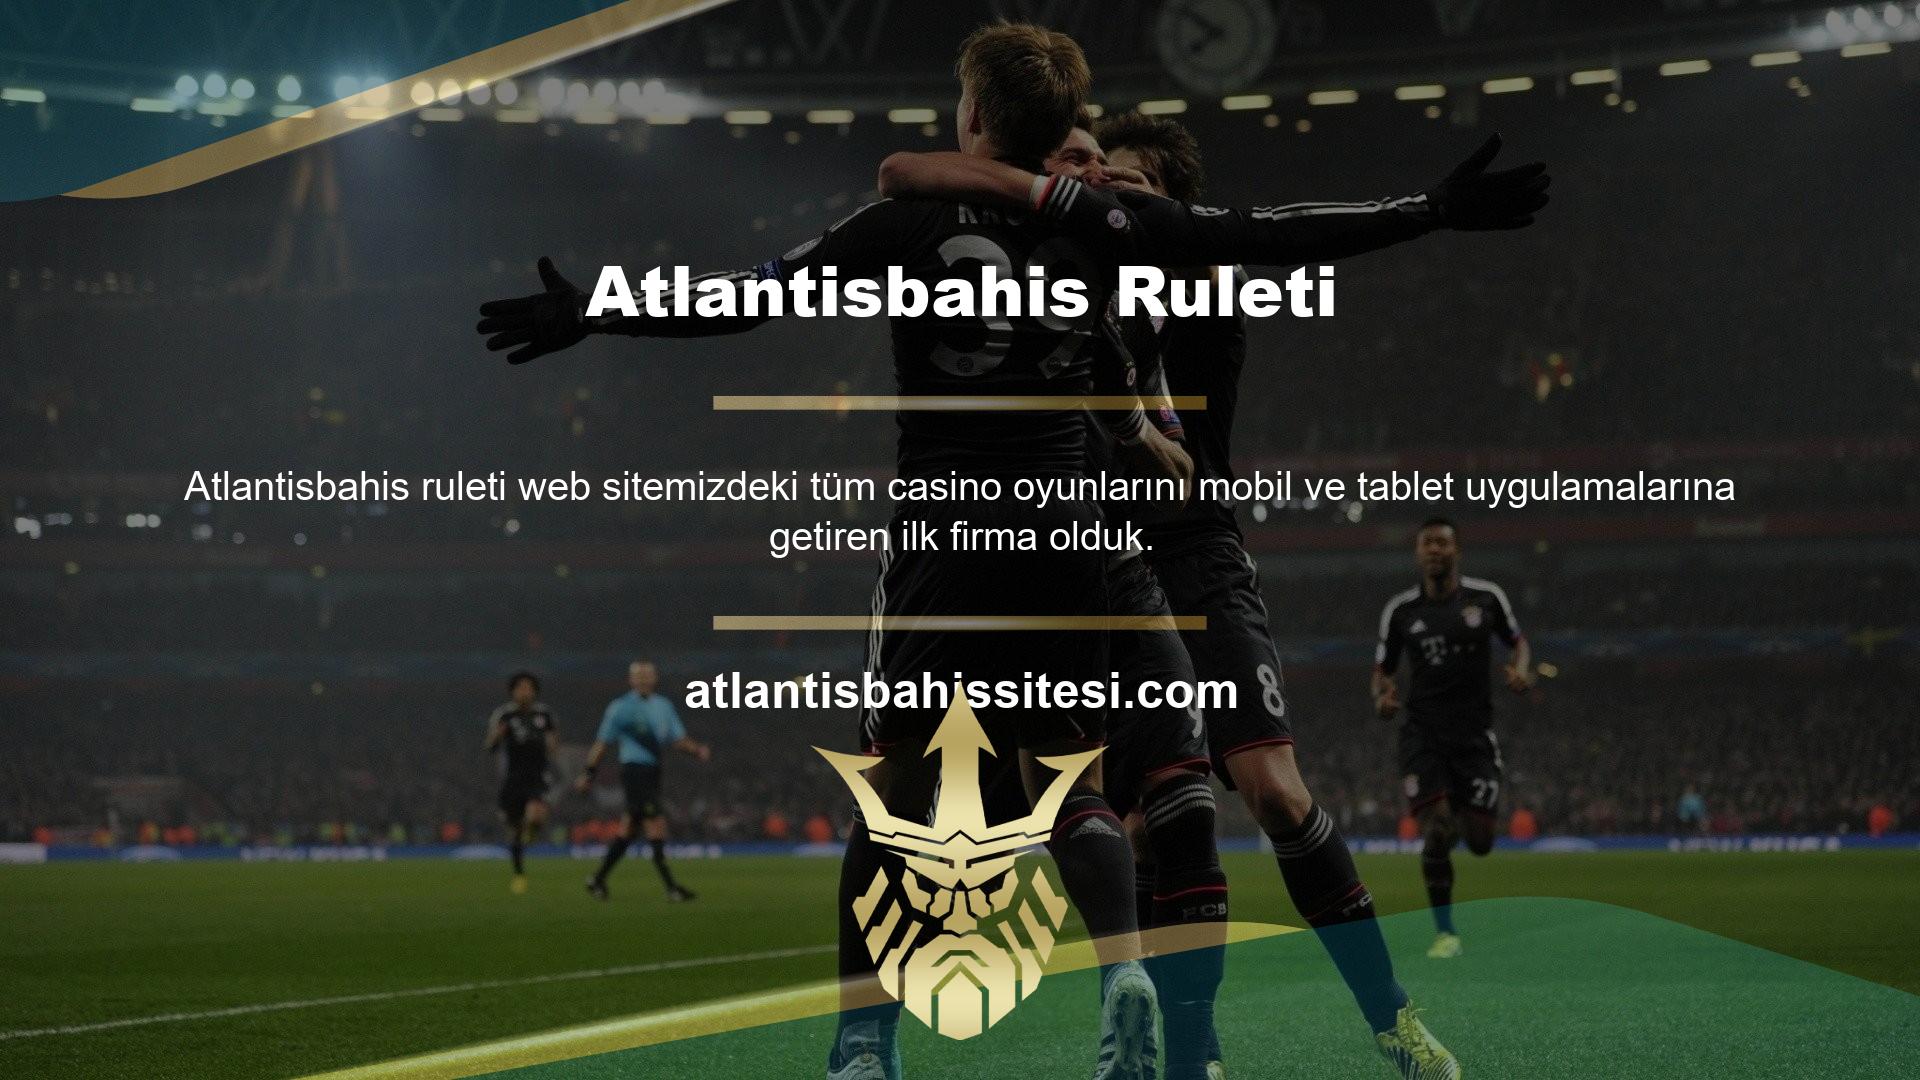 Atlantisbahis, her alanda güvenilir bir oyun ortamı sağlamak ve hedeflerinize hızlı bir şekilde ulaşmak için bu teknolojiyi benimseyen birkaç oyun sitesinden biridir